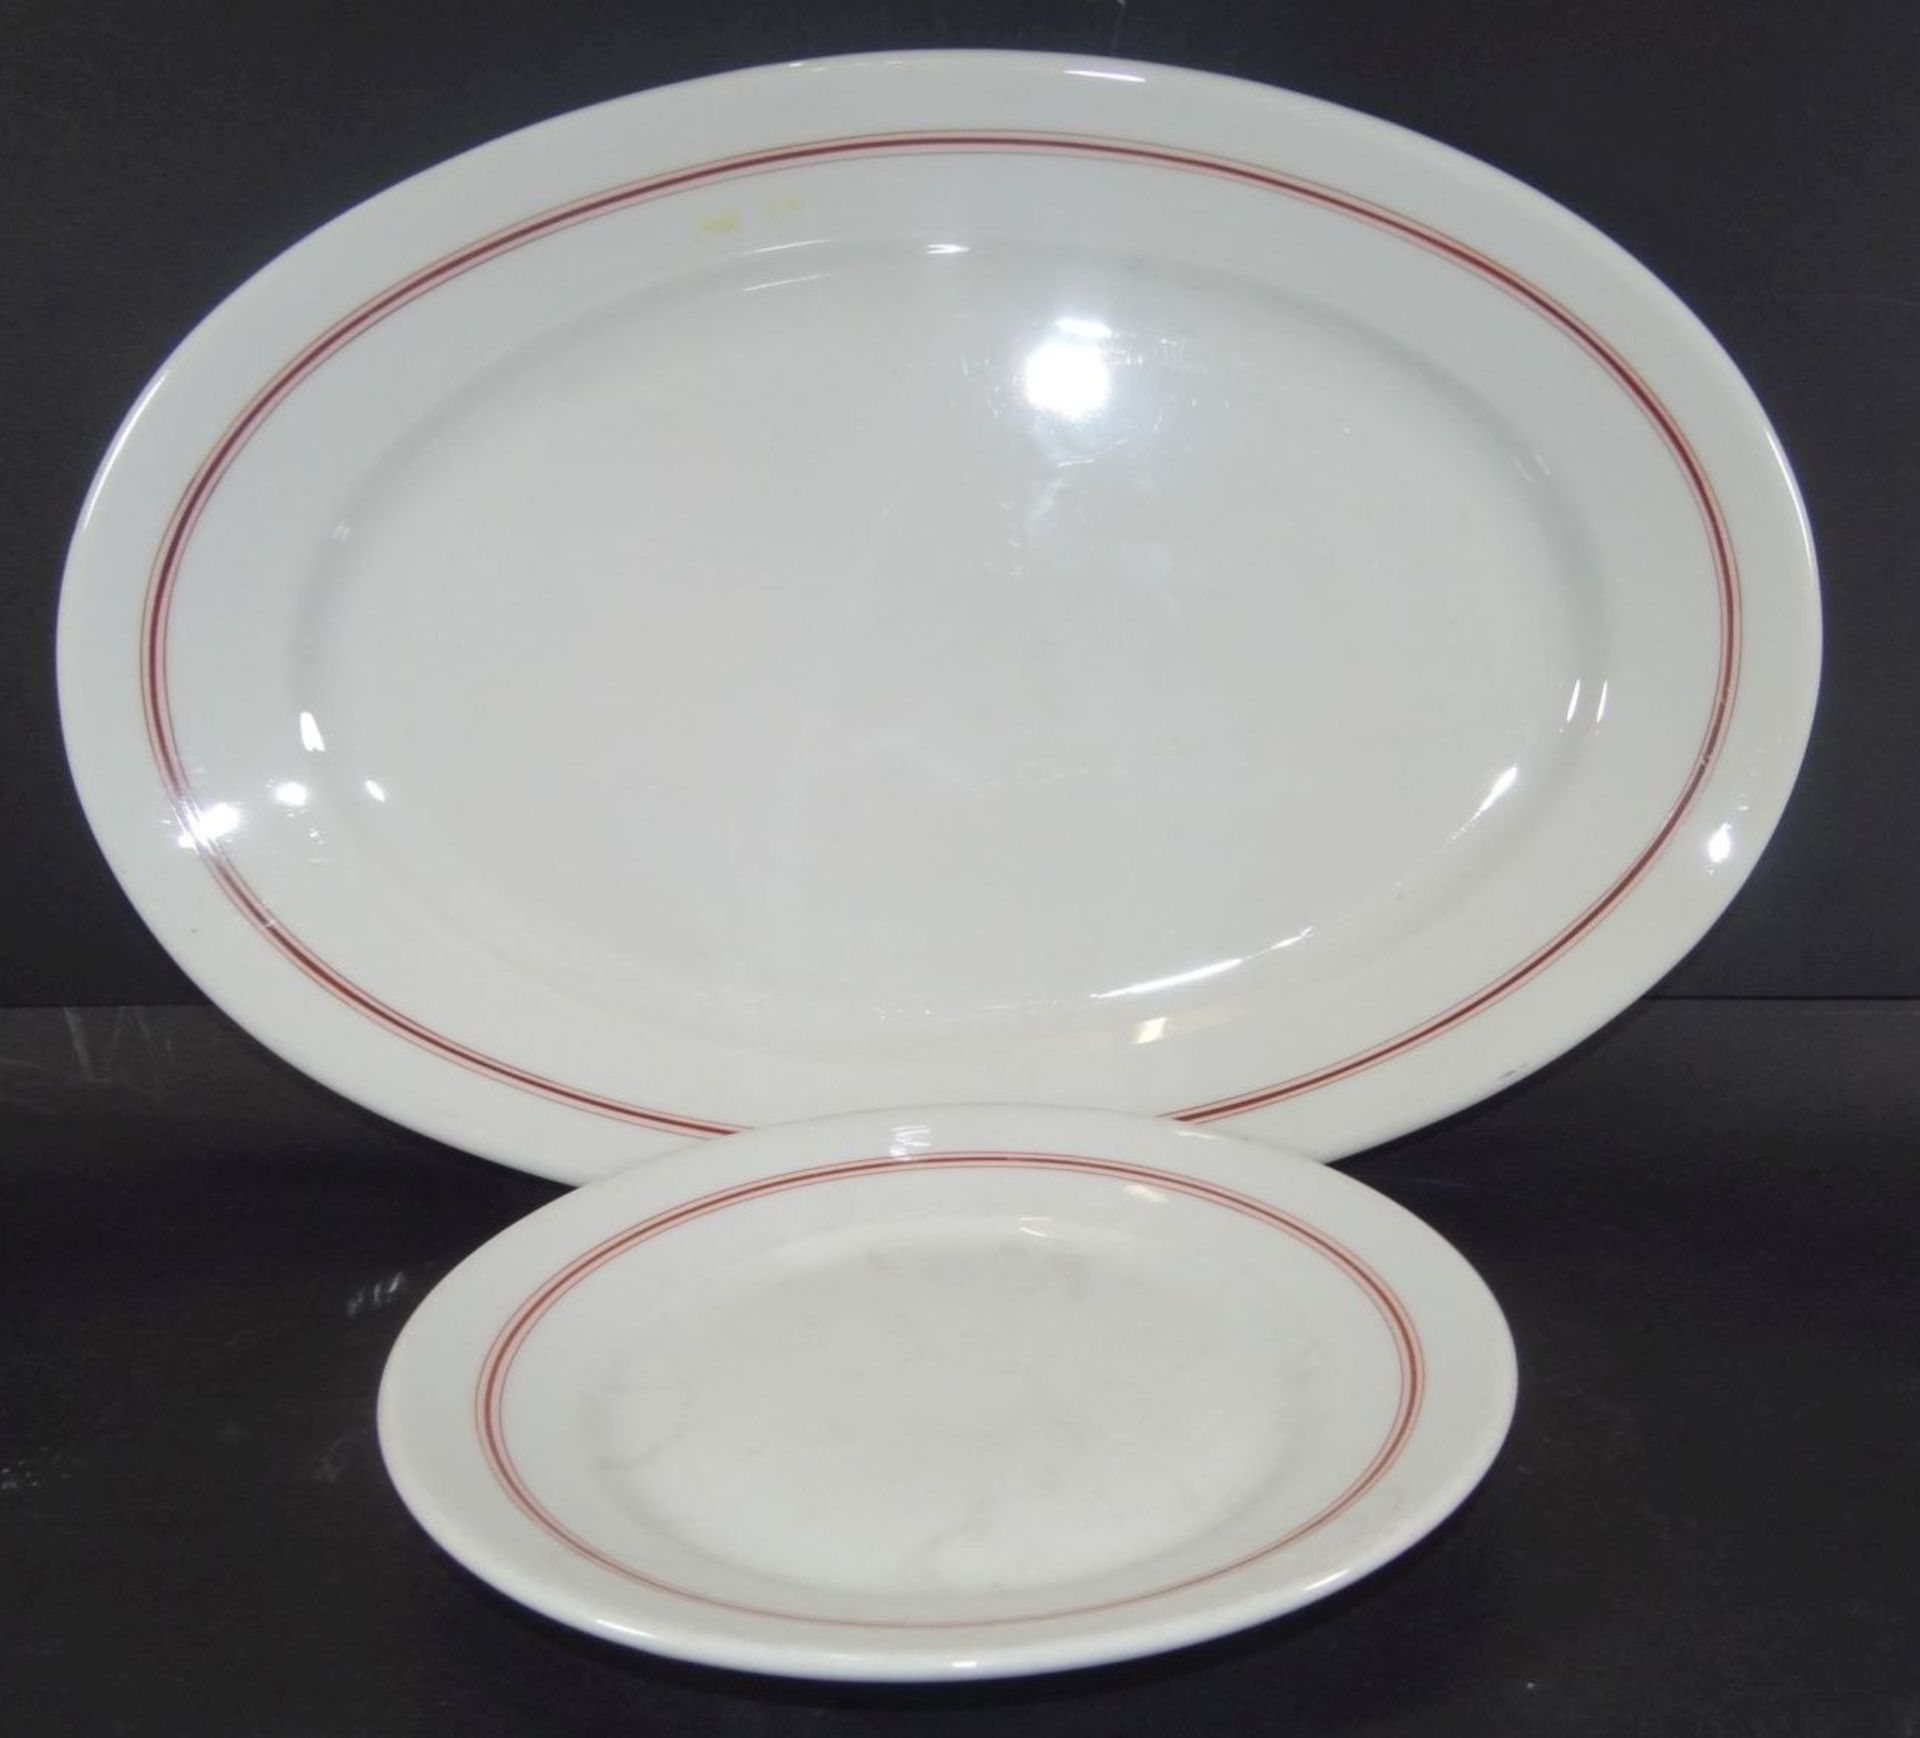 ovale Platte und kl. Teller, Marinegschirr, KPM, dat. 1940/42, roter Rand, 40x25 cm und D-20 cm